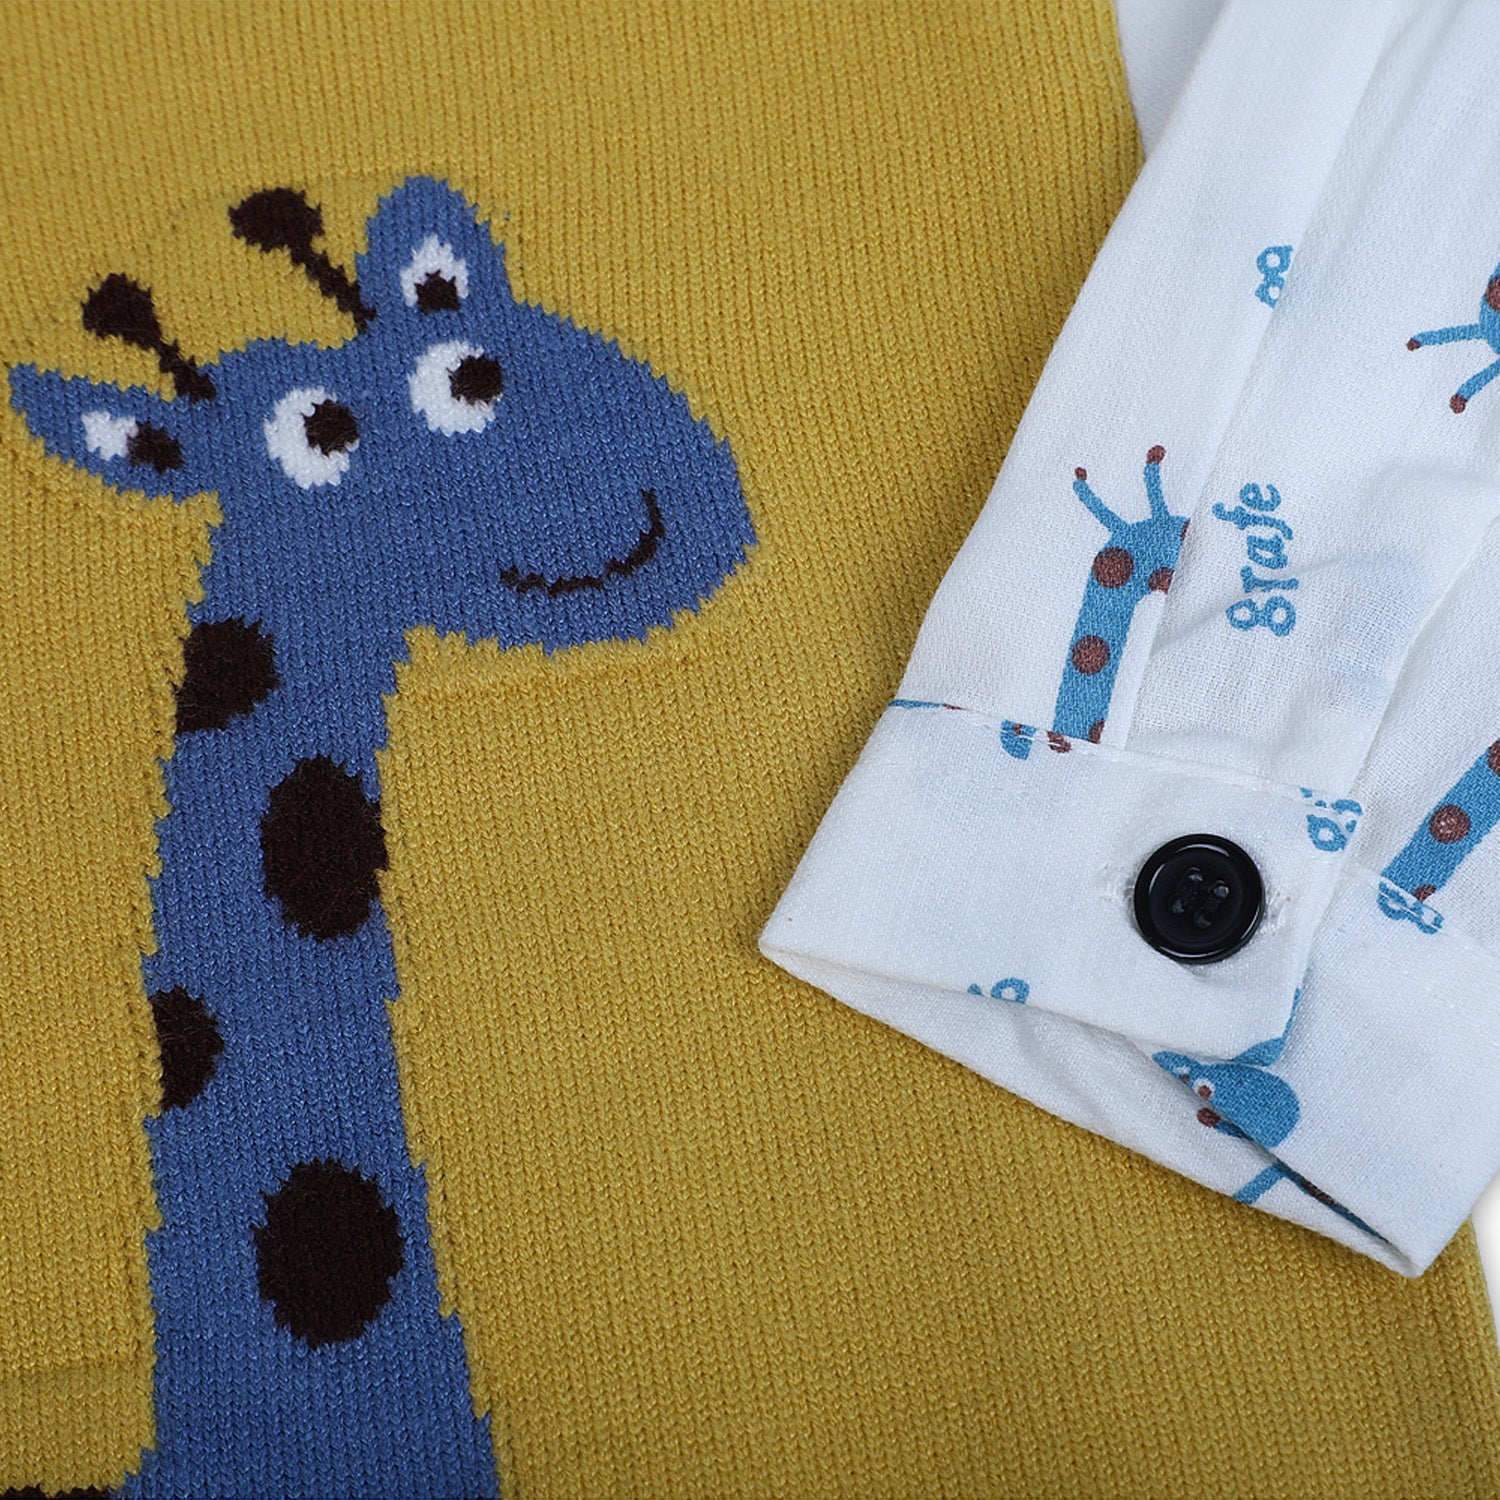 Cute Giraffe Premium Full Sleeves Knitted Sweater - Mustard And White - Baby Moo